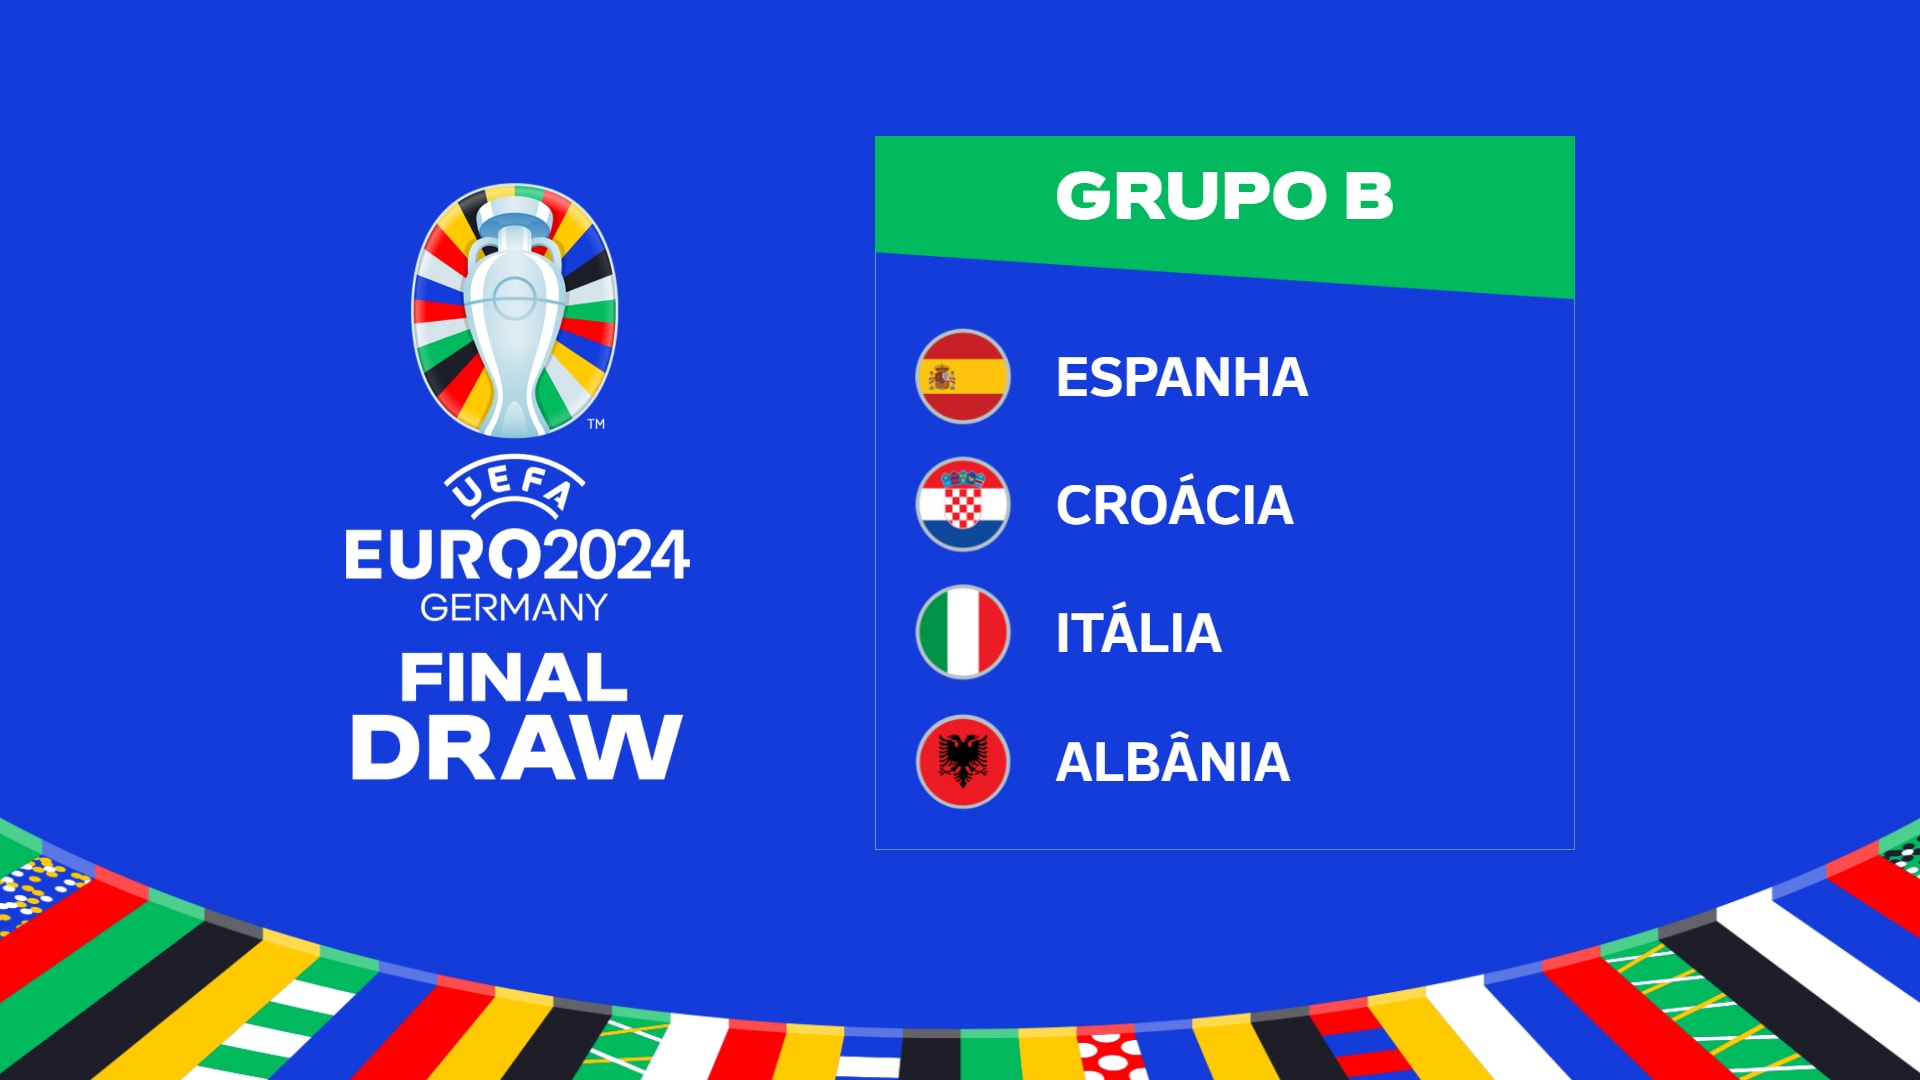 UEFA EURO 2024 Grupo B: España, Croacia, Italia, Albania |  Eurocopa 2024